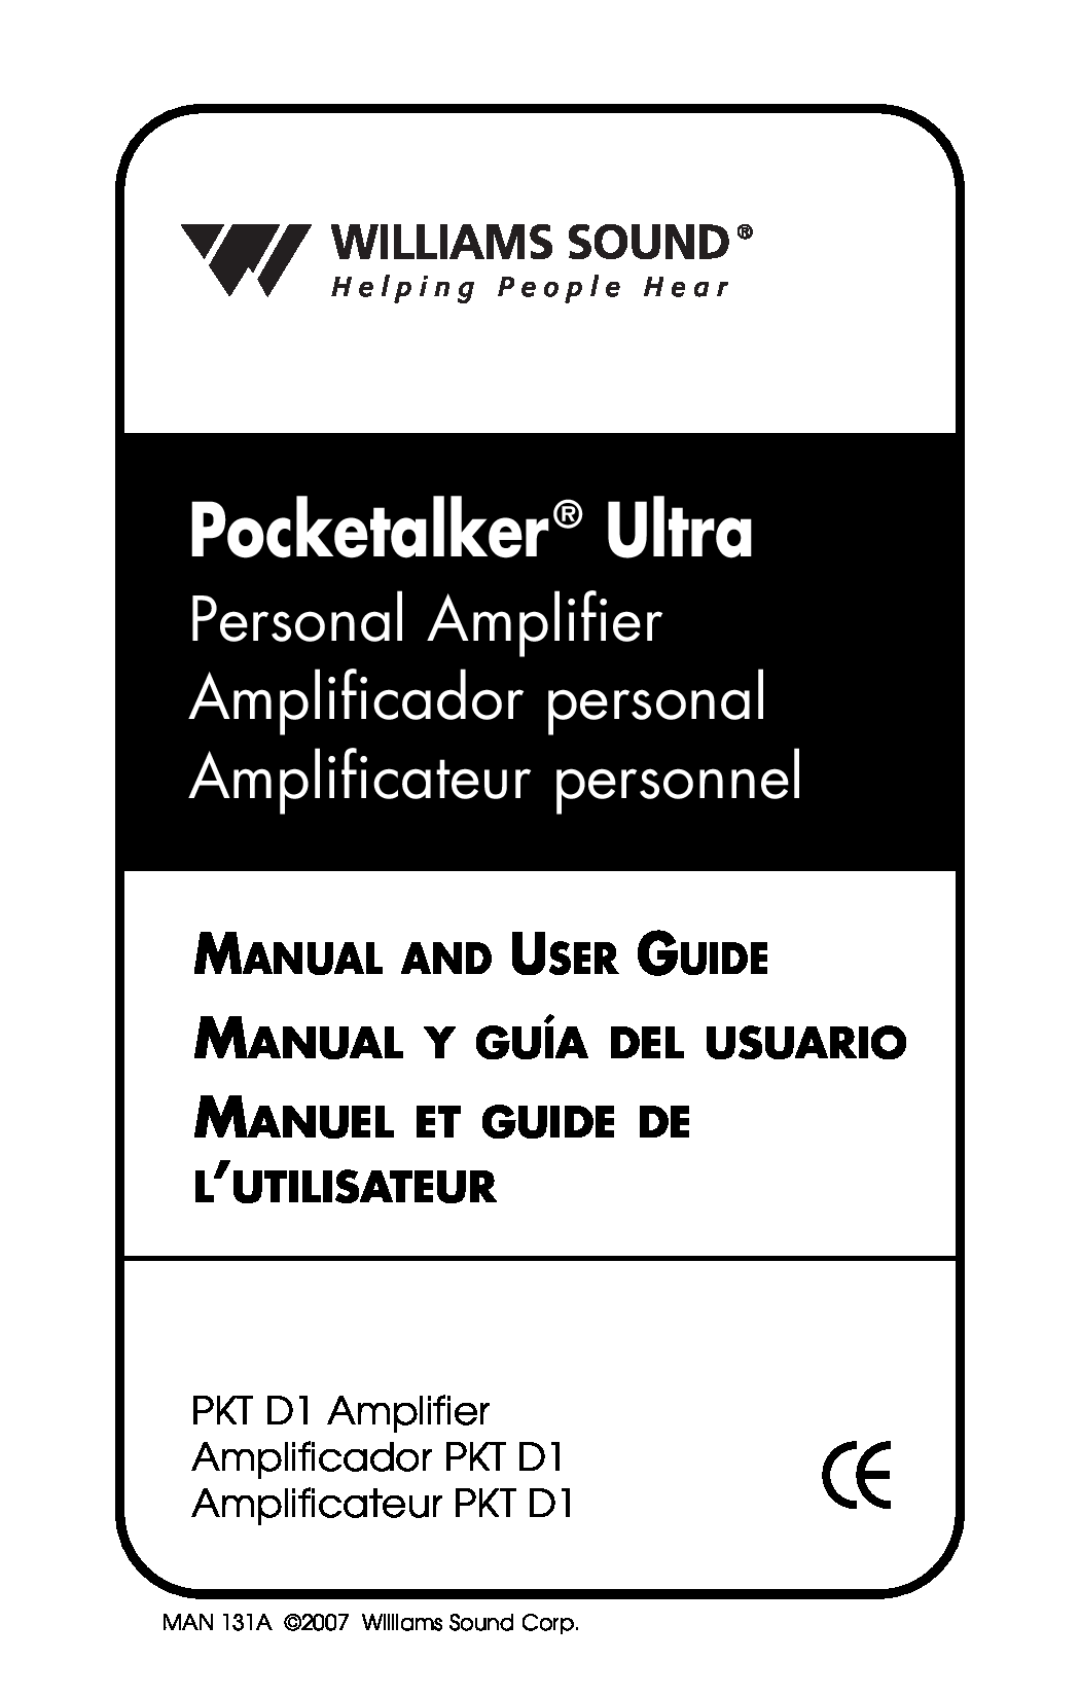 Williams Sound PKT D1 manual Pocketalker Ultra, Manual And User Guide Manual Y Guía Del Usuario 